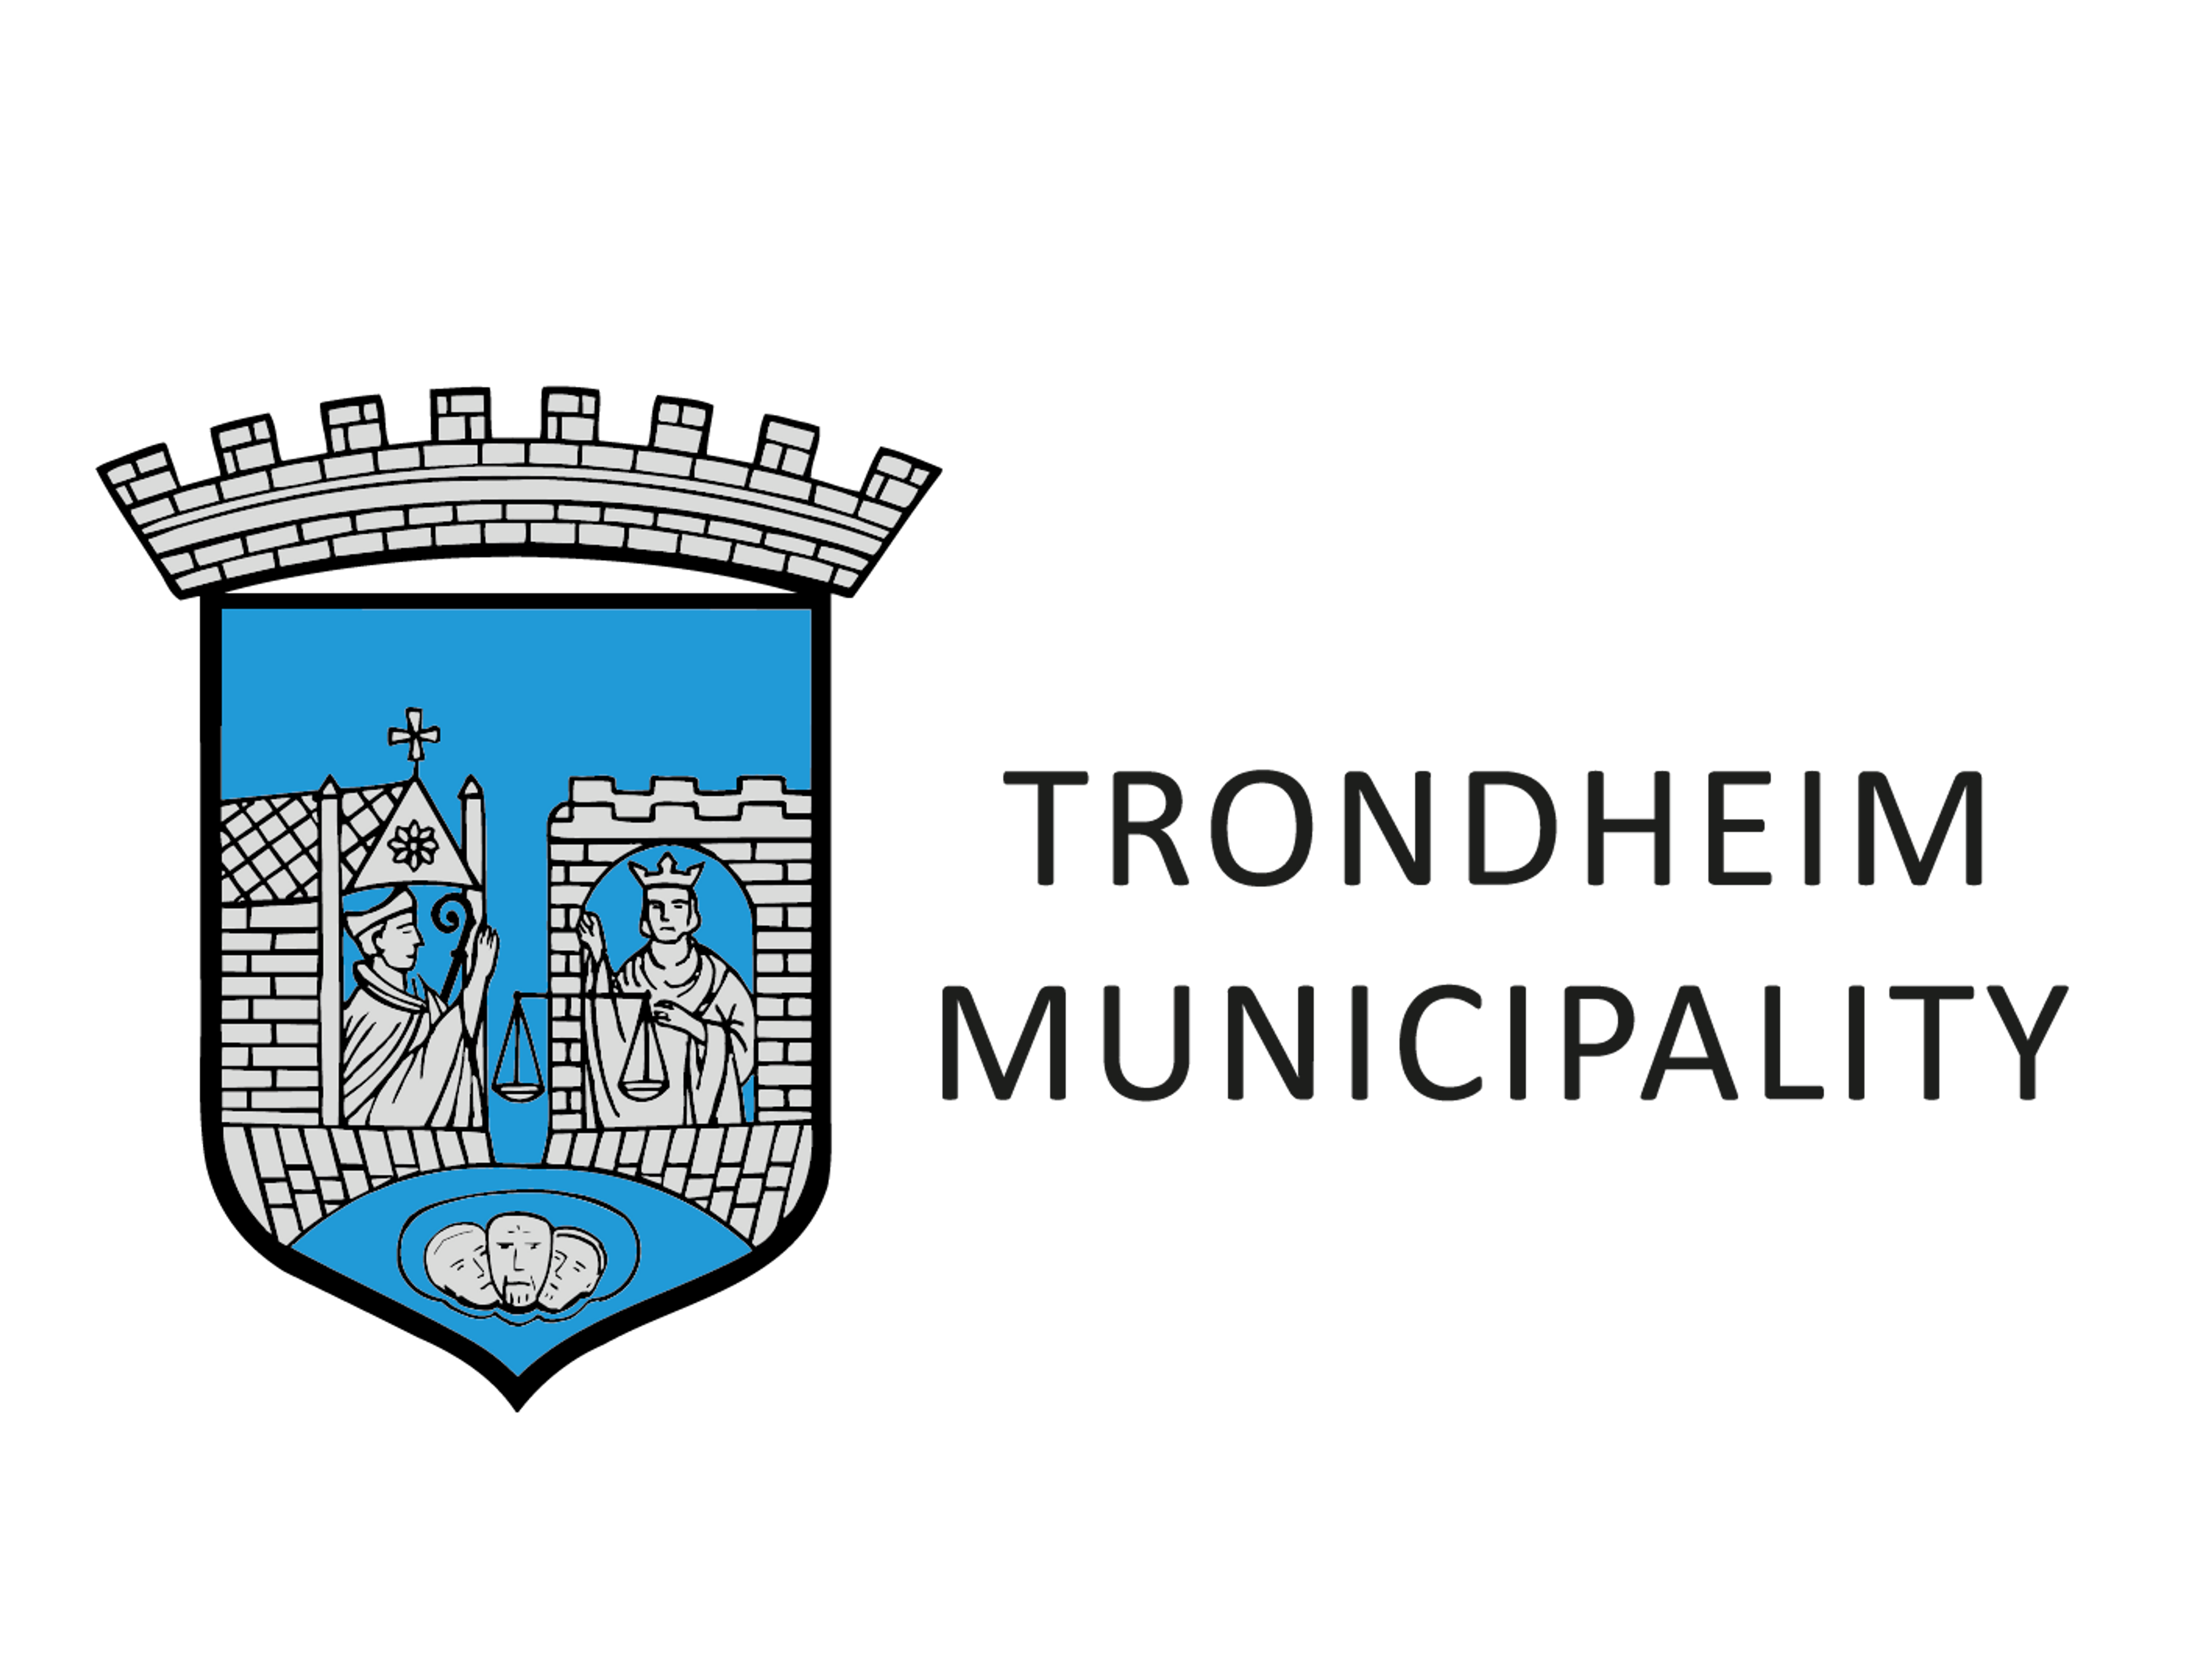 Trondheim municipality